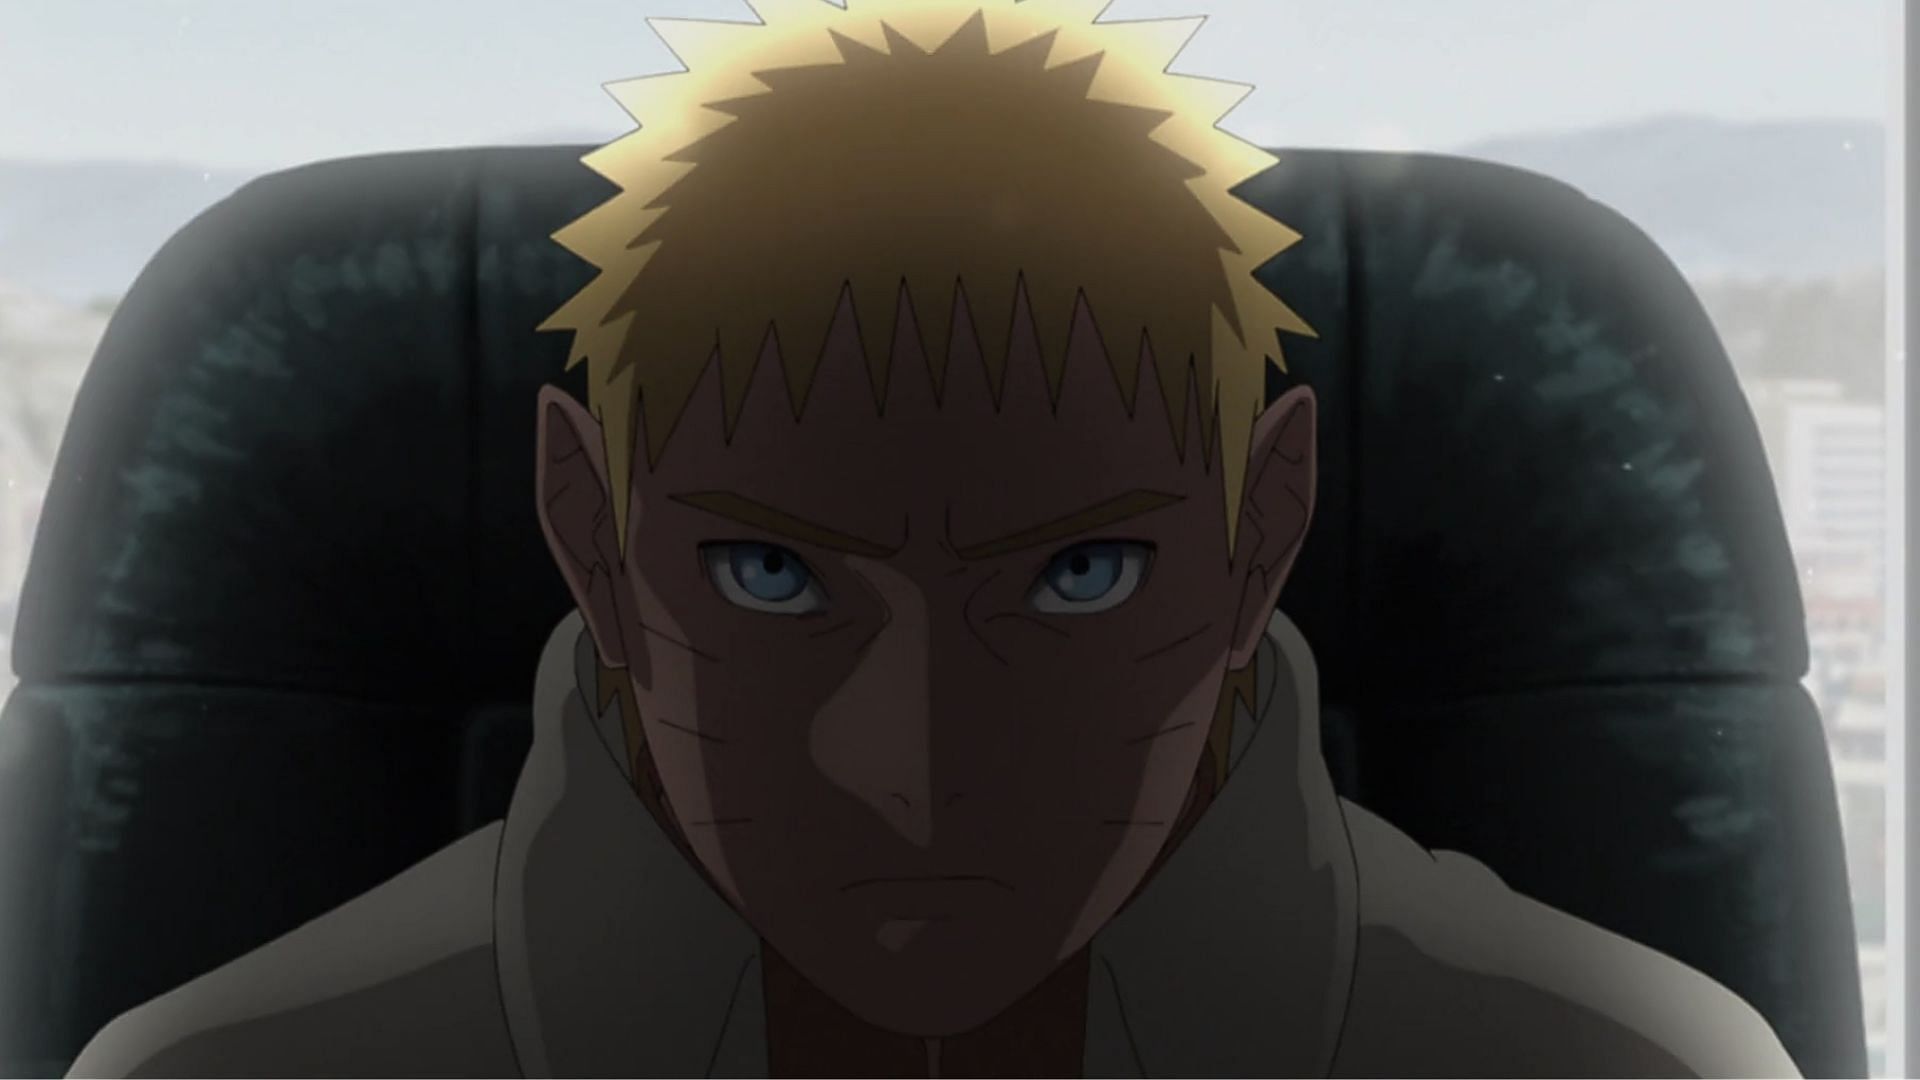 Naruto as in Boruto episode 287 (Image via Studio Pierrot)